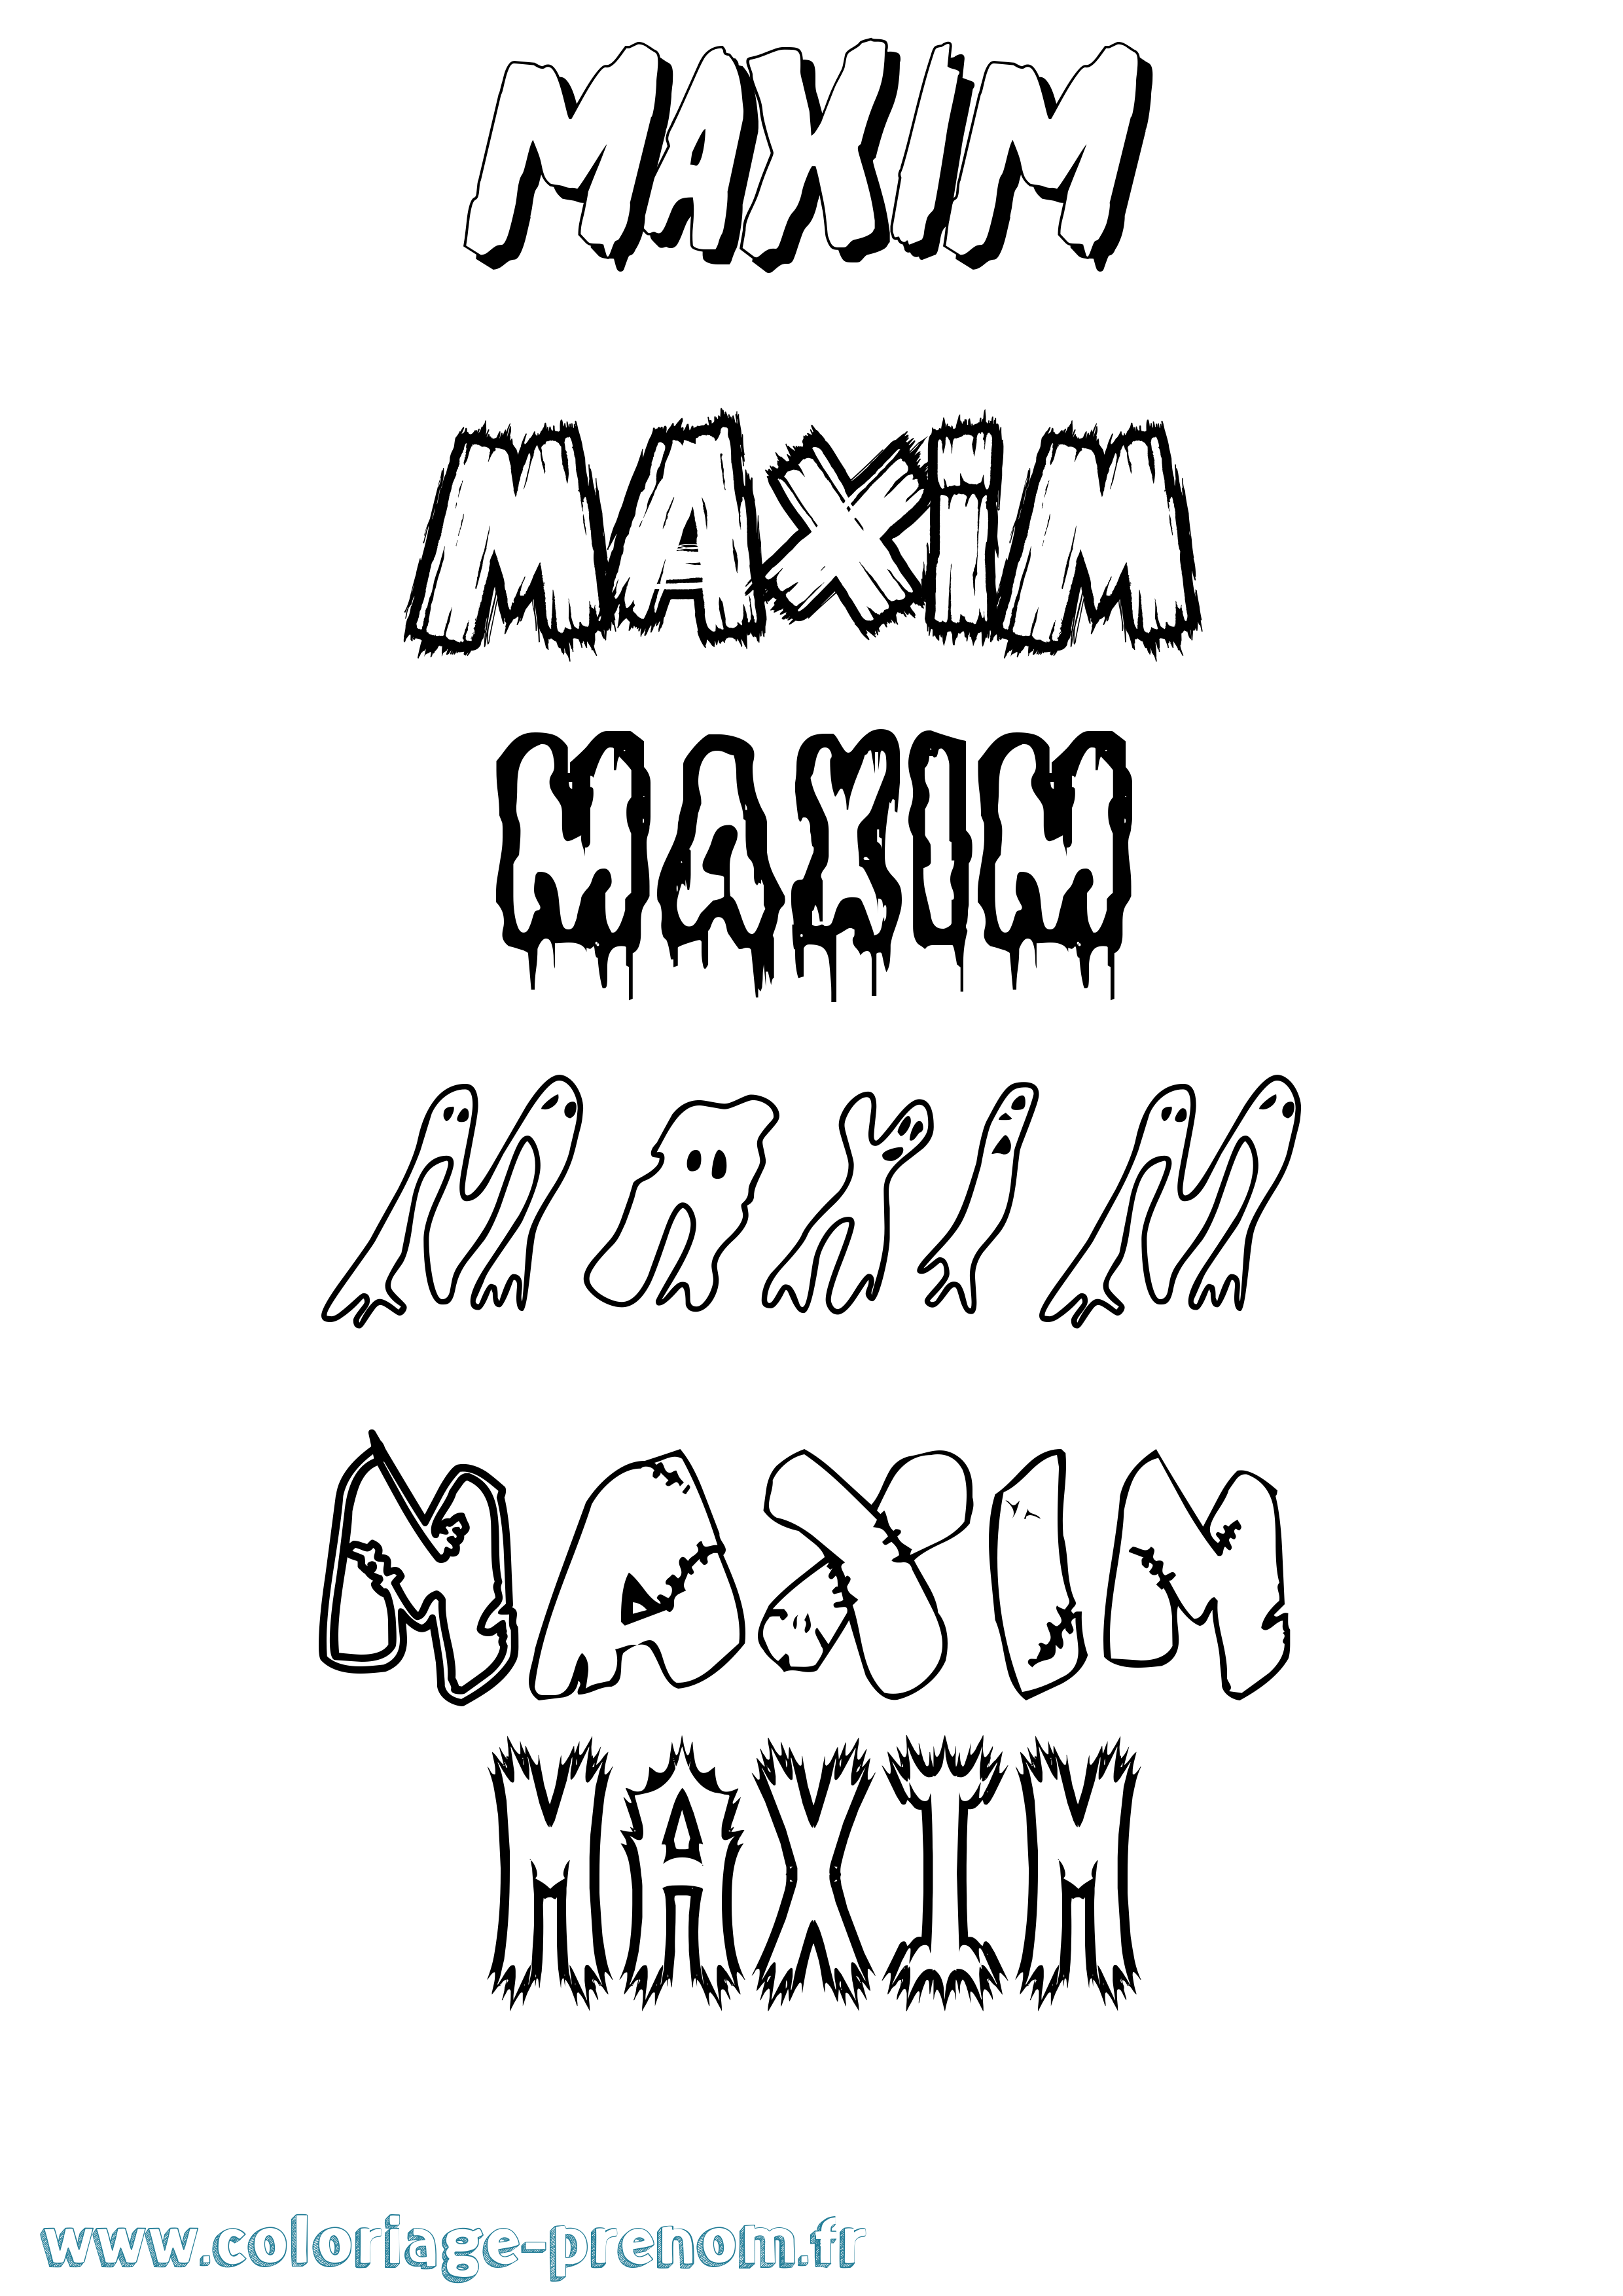 Coloriage prénom Maxim Frisson